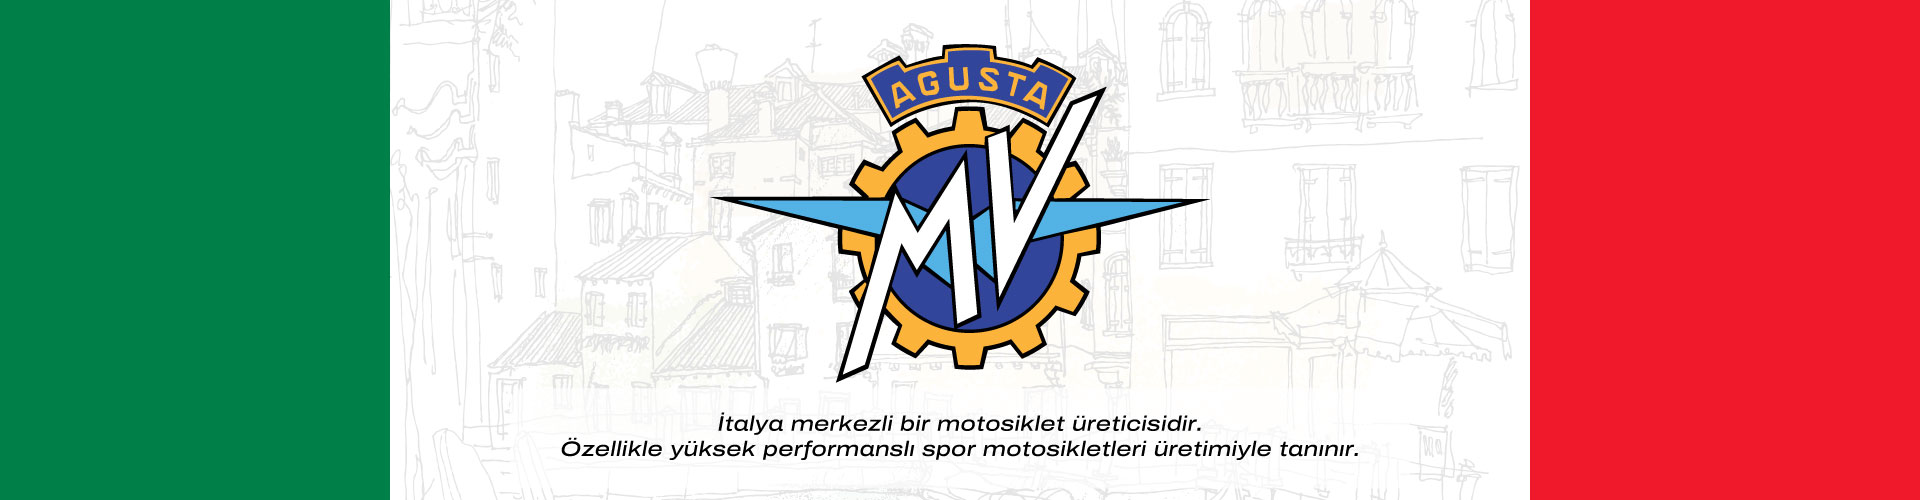 Mv Agusta hangi ülkenin markası